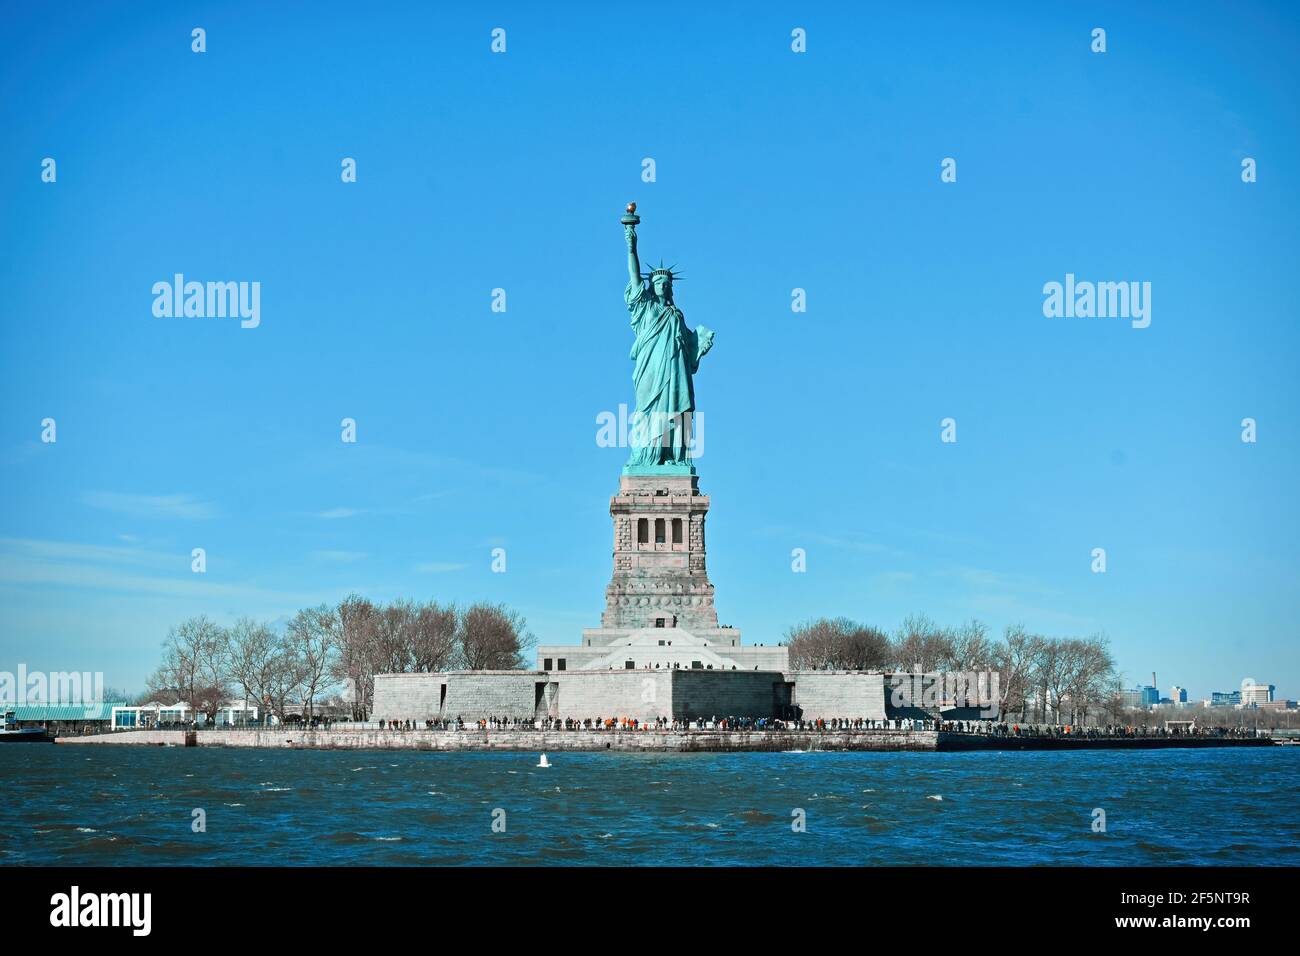 Statua della libertà, colossale scultura neoclassica e conosciuta anche come la libertà che illumina il mondo visto in una crociera sul fiume Hudson, New York, USA Foto Stock